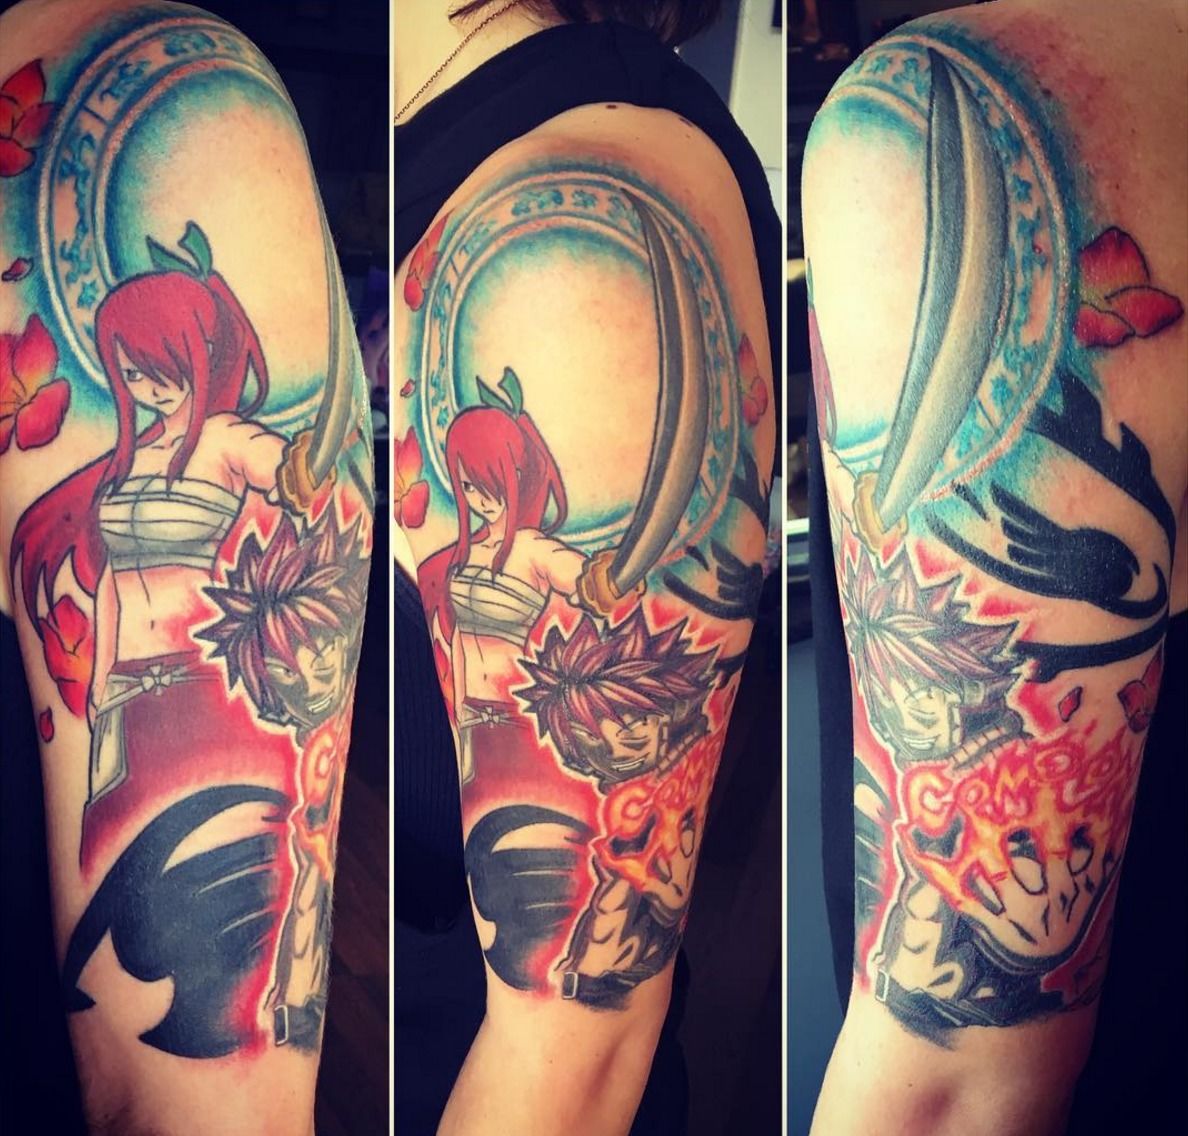 Stunning Fairy Tail Tattoo Ideas